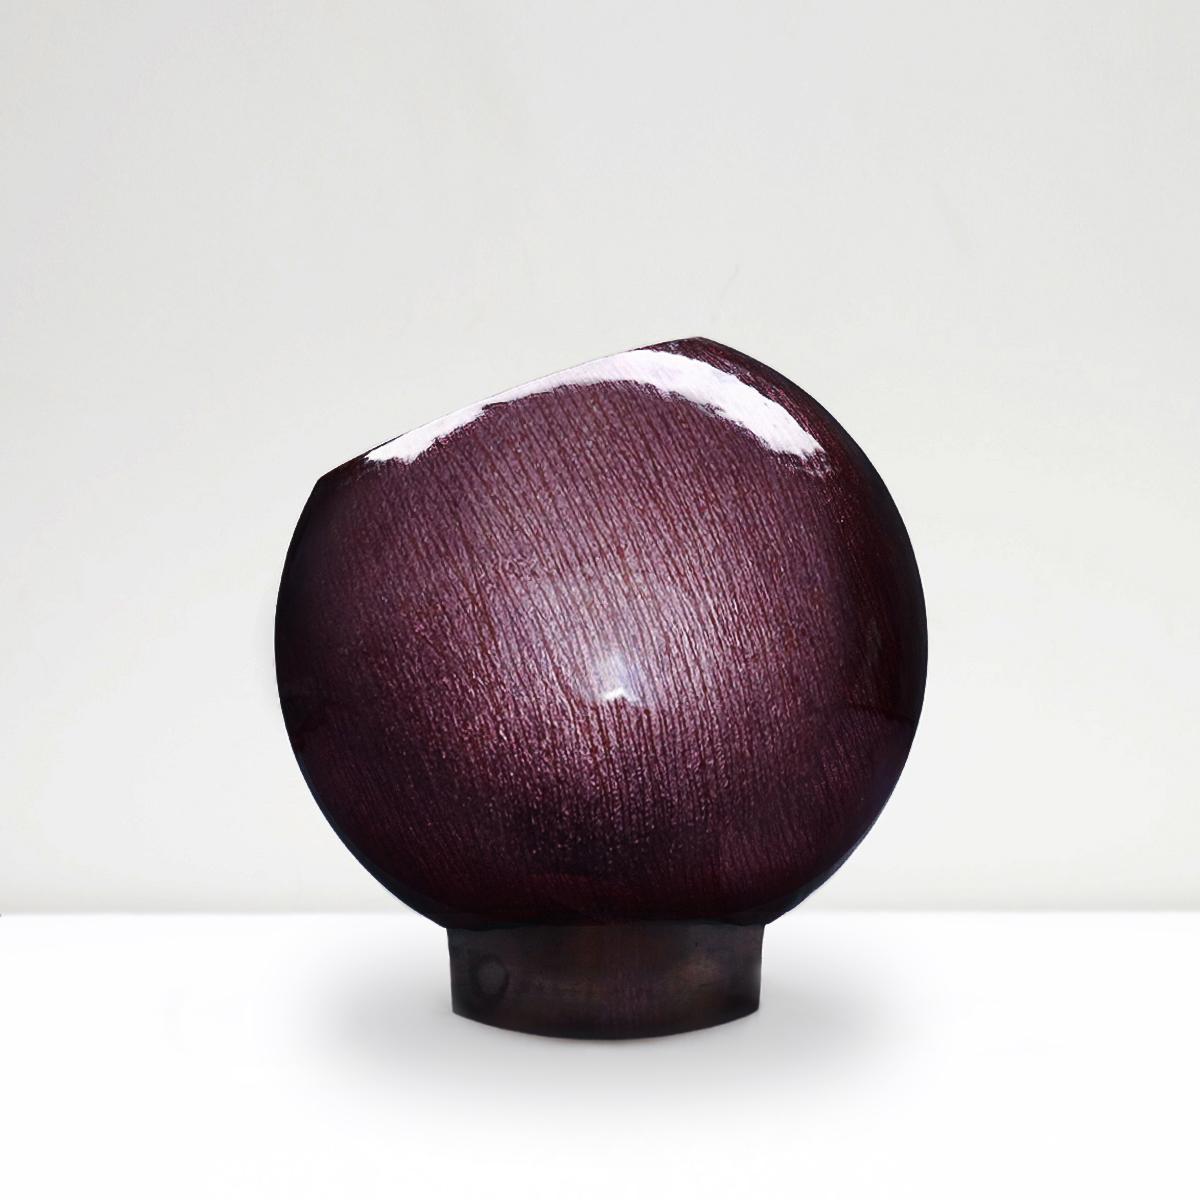 Un vase sphérique en bronze, verre et émail violet irisé de Studio Del Campo vintage italien des années 1960, vraiment rare et magnifique. 

Les quatre futurs fondateurs du Studio Del Campo ont commencé à travailler dans un atelier de vitrerie au